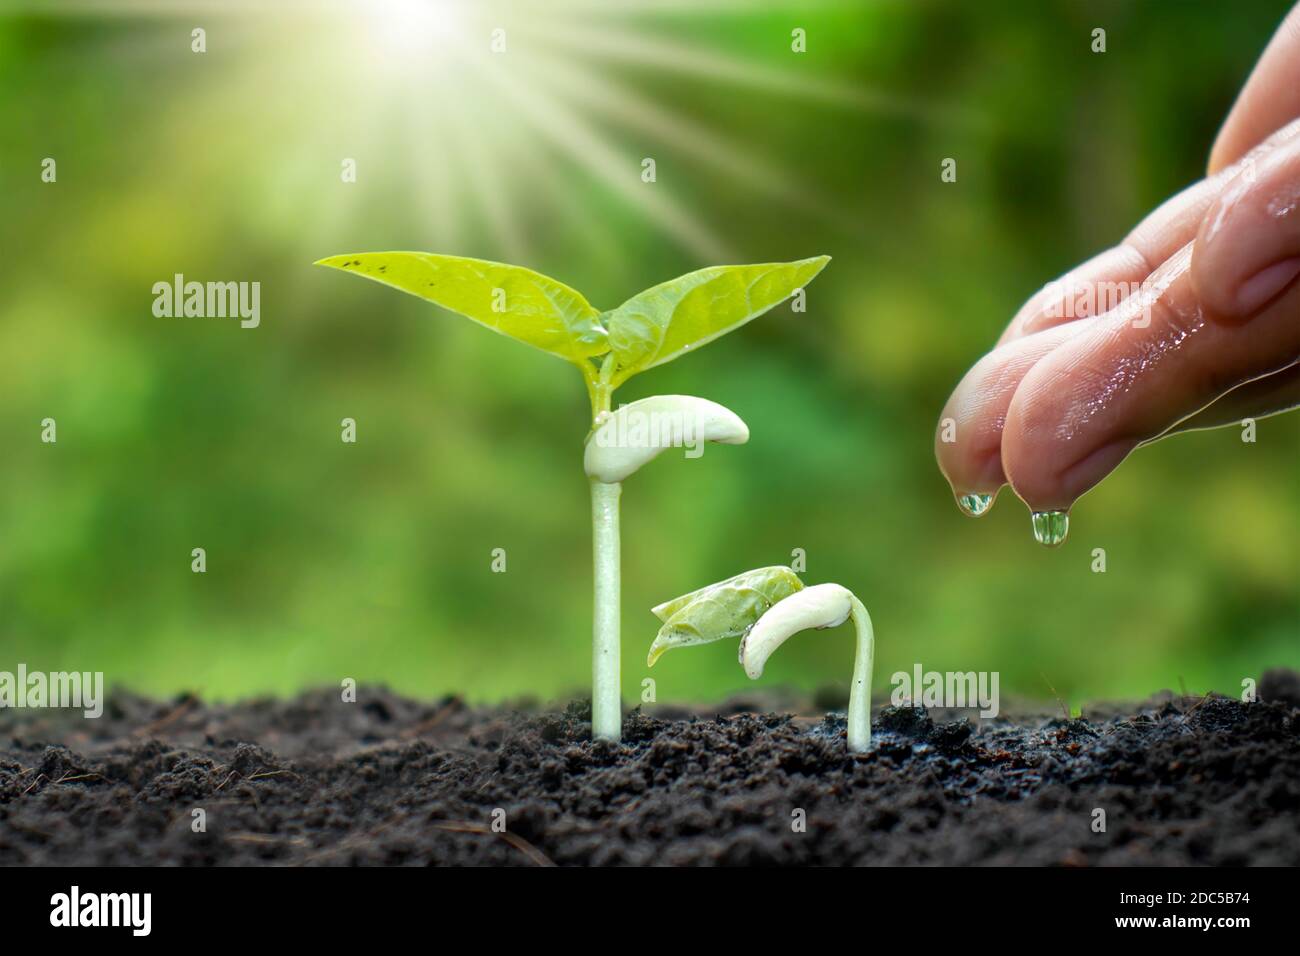 Cultivo de cultivos en suelos fértiles y plantas de riego, incluyendo la demostración de las etapas de crecimiento de plantas, conceptos de cultivo e inversiones para los agricultores. Foto de stock